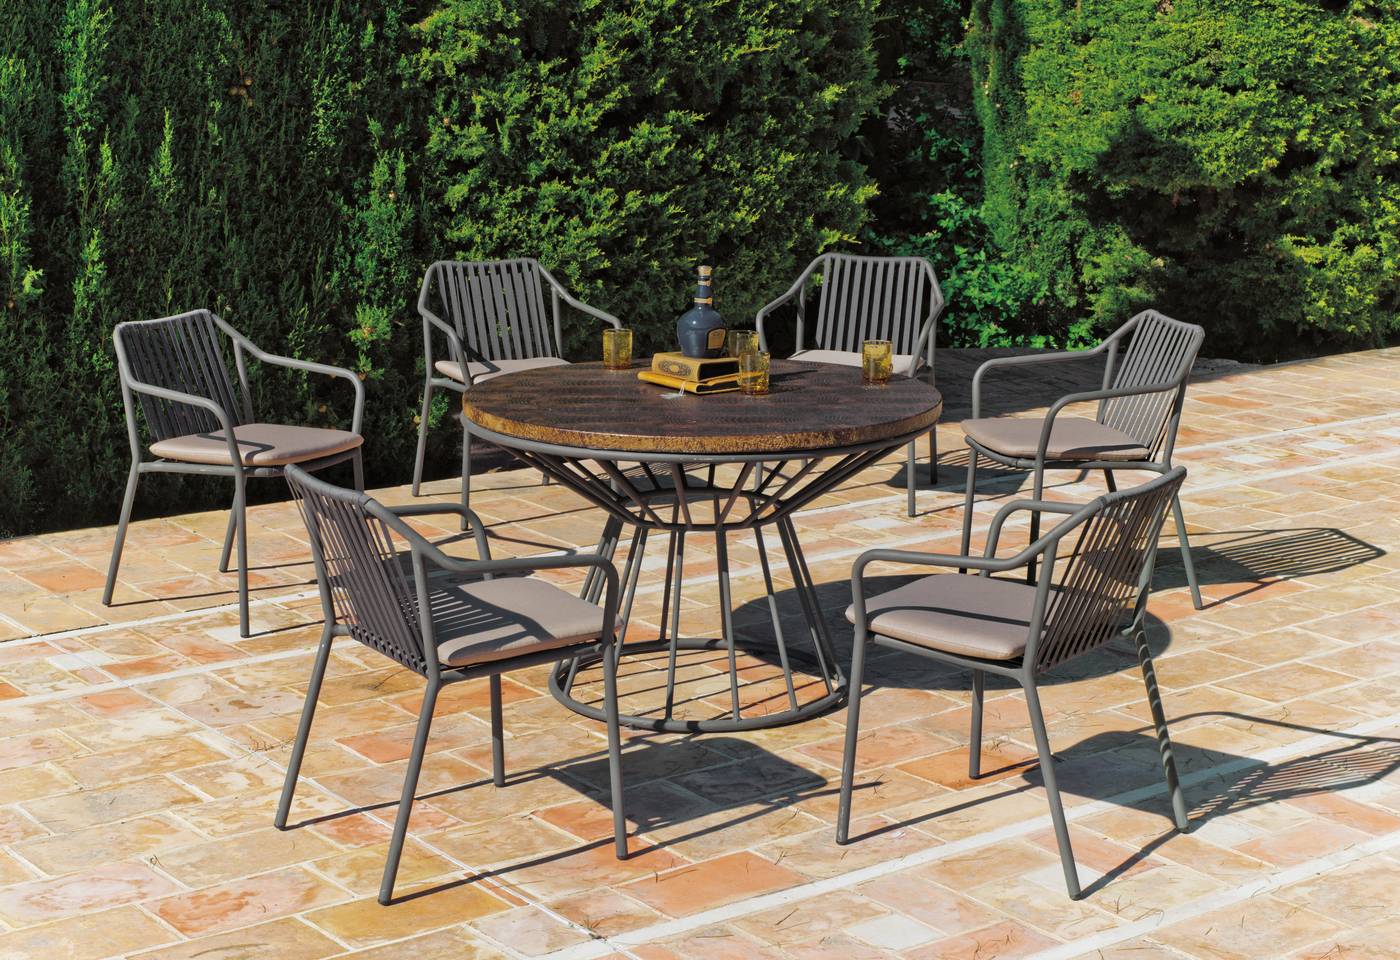 Conjunto de aluminio para jardín y terraza: mesa de comedor redonda de 120cm. + 6 sillones + cojines